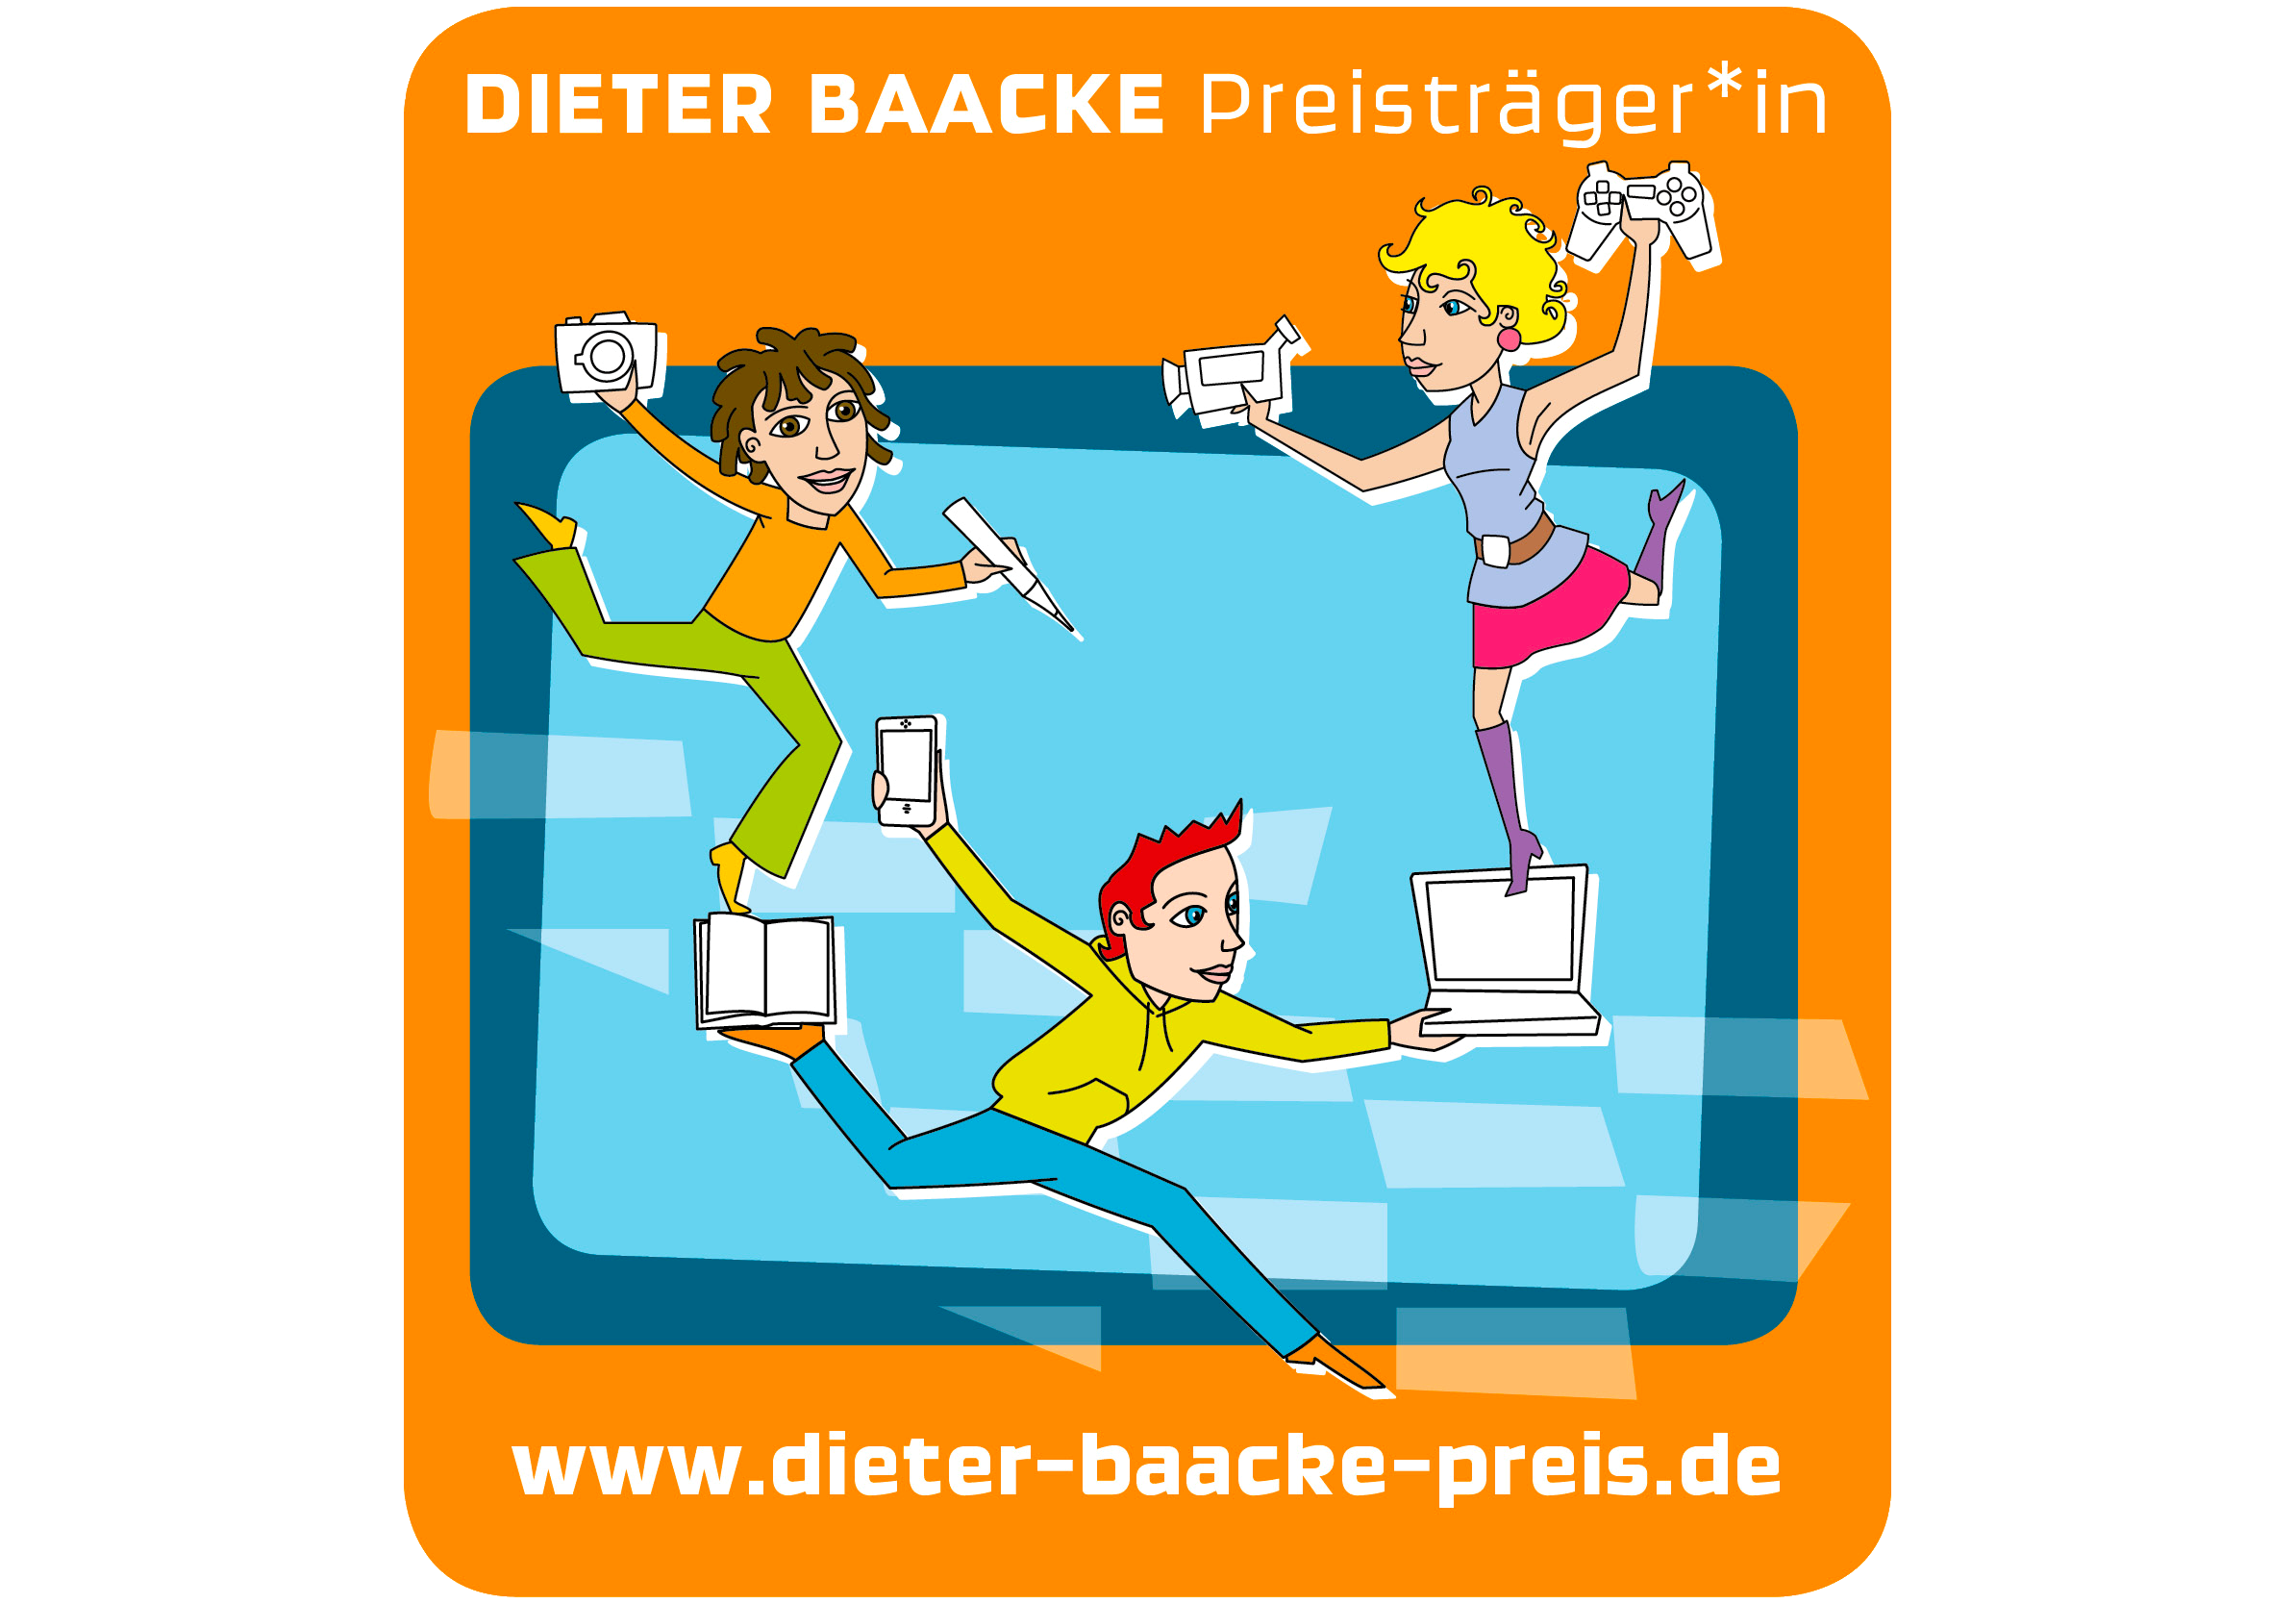 Dieter Baacke Preisträger*in
Bunte Figuren mit Kameras, Controllern und Büchern.
www.dieter-baacke-preis.de